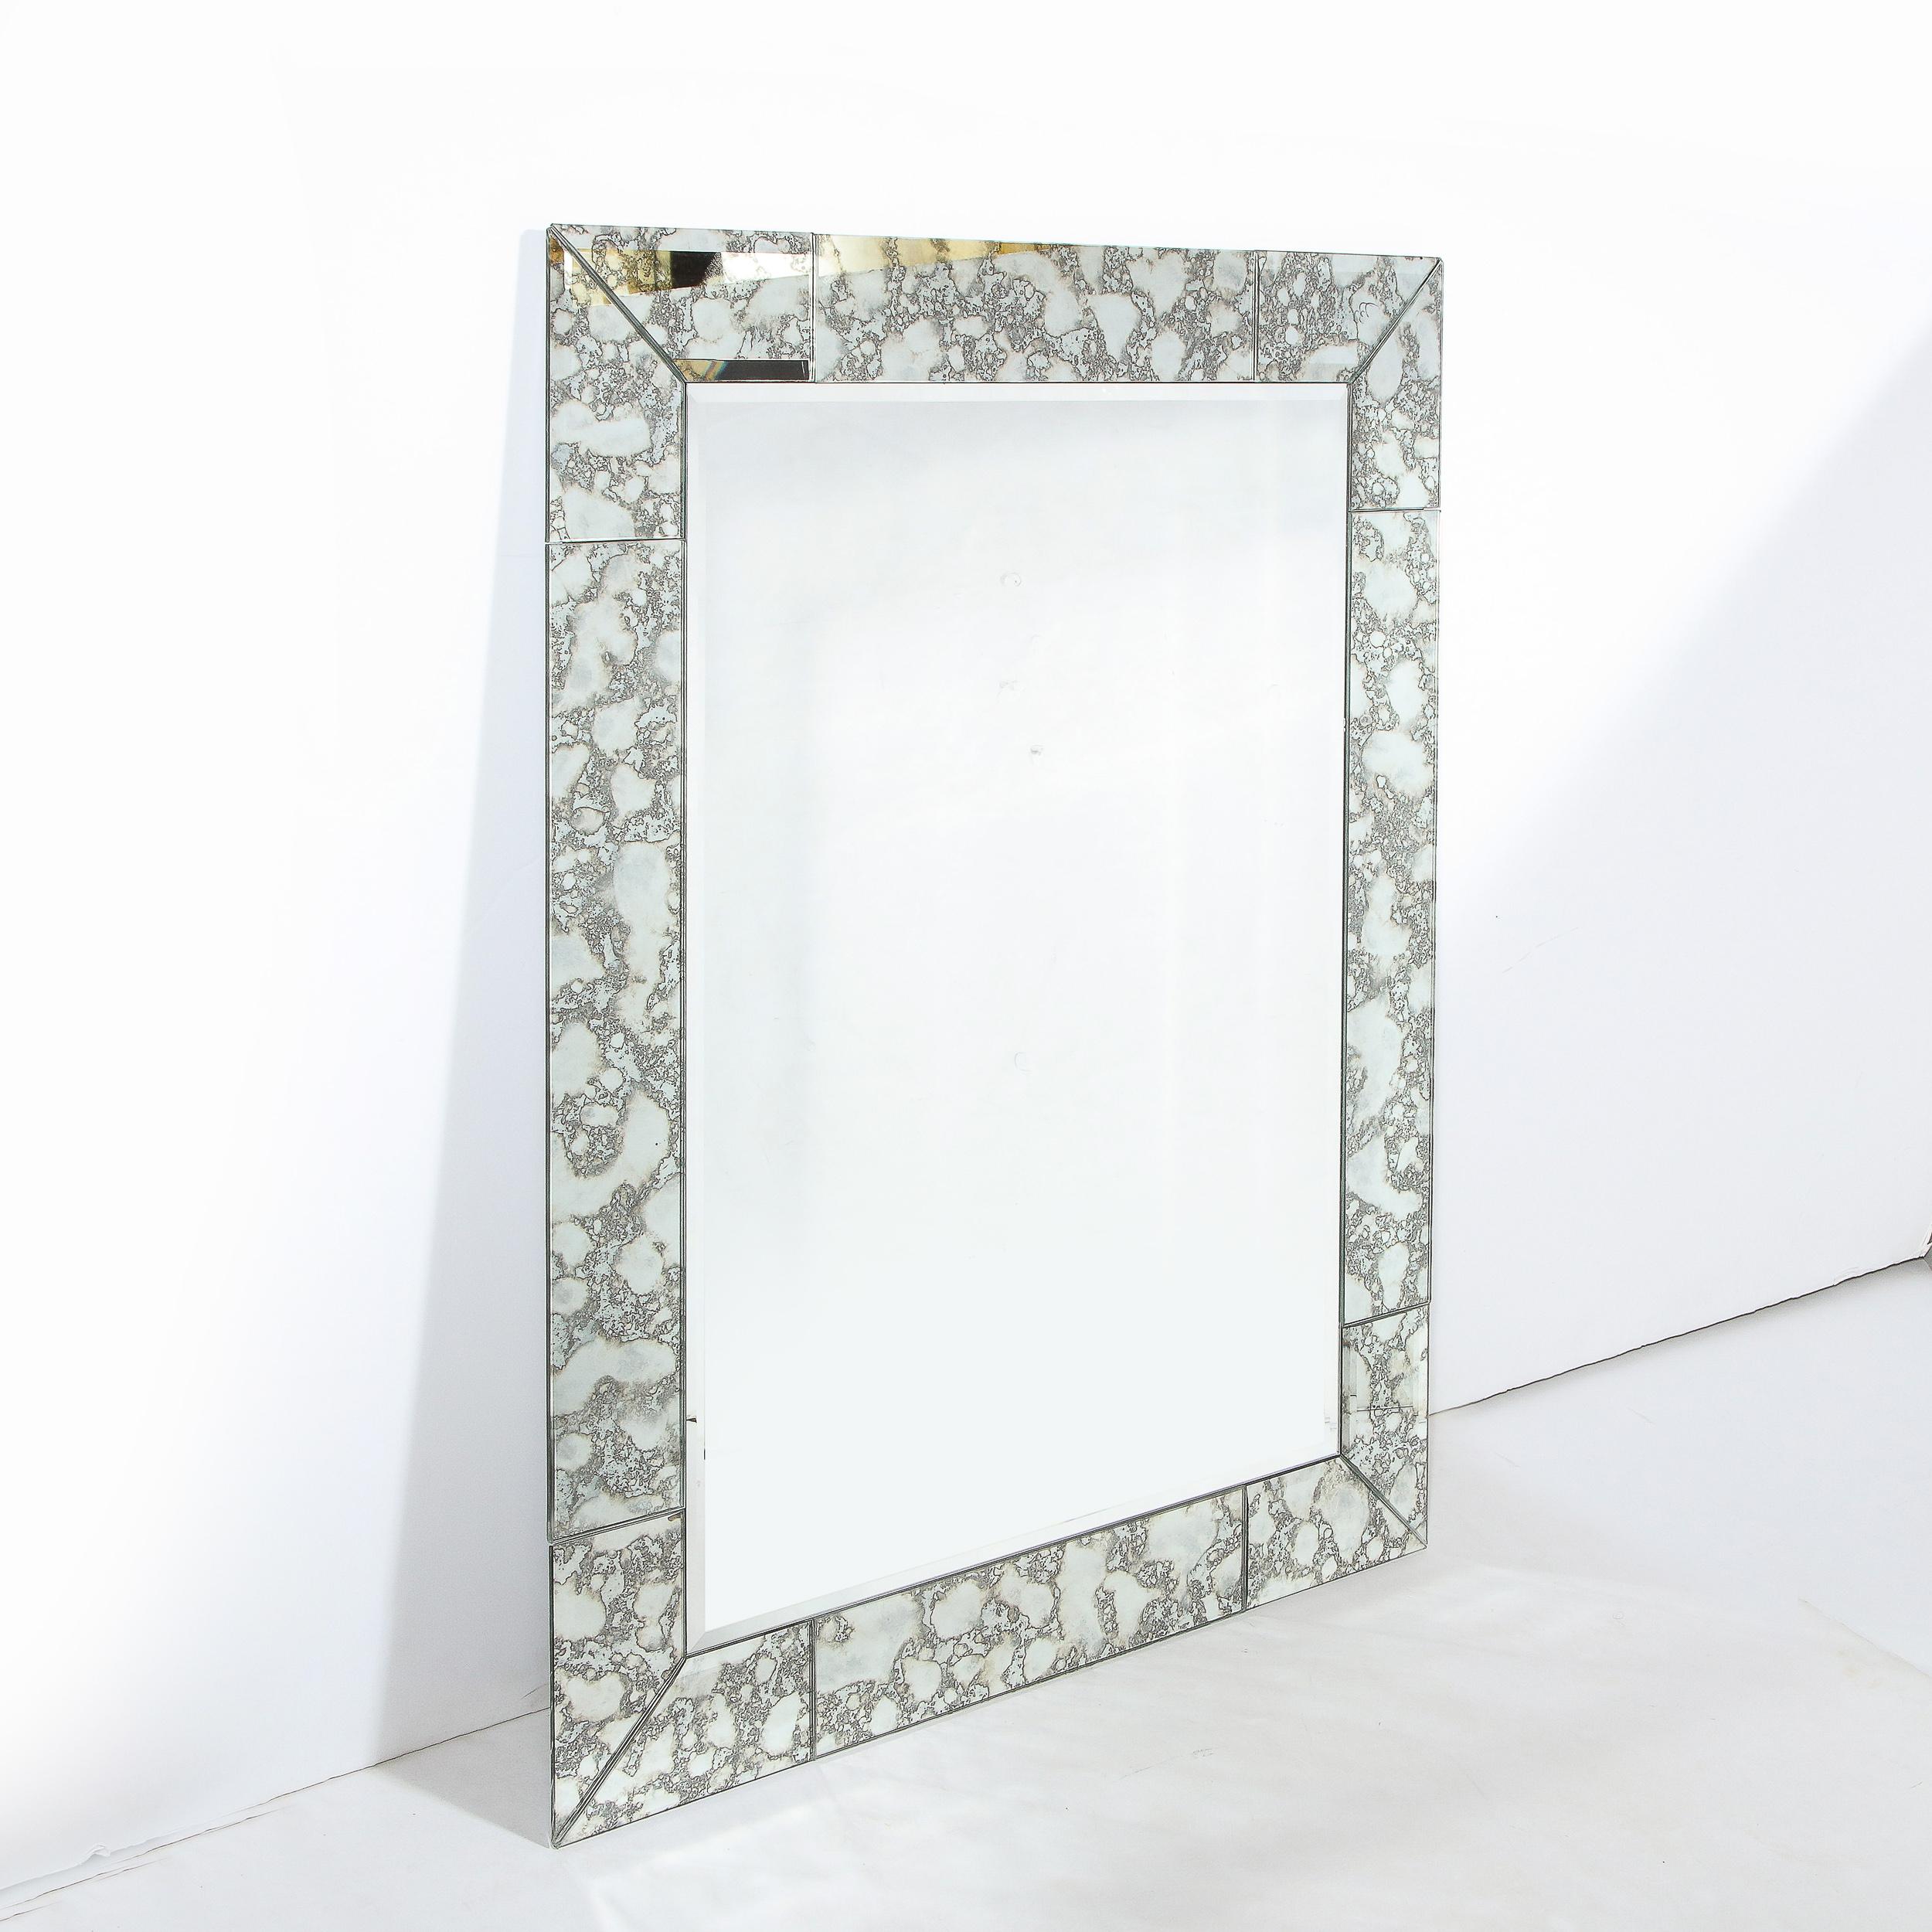 Dieser atemberaubende moderne und anpassbare Spiegel wurde in den Vereinigten Staaten hergestellt. Es hat eine rechteckige Form mit einem mosaikartigen Rand, der aus geradlinigen Spiegelsegmenten mit abgeschrägten Kanten besteht, die sich um den